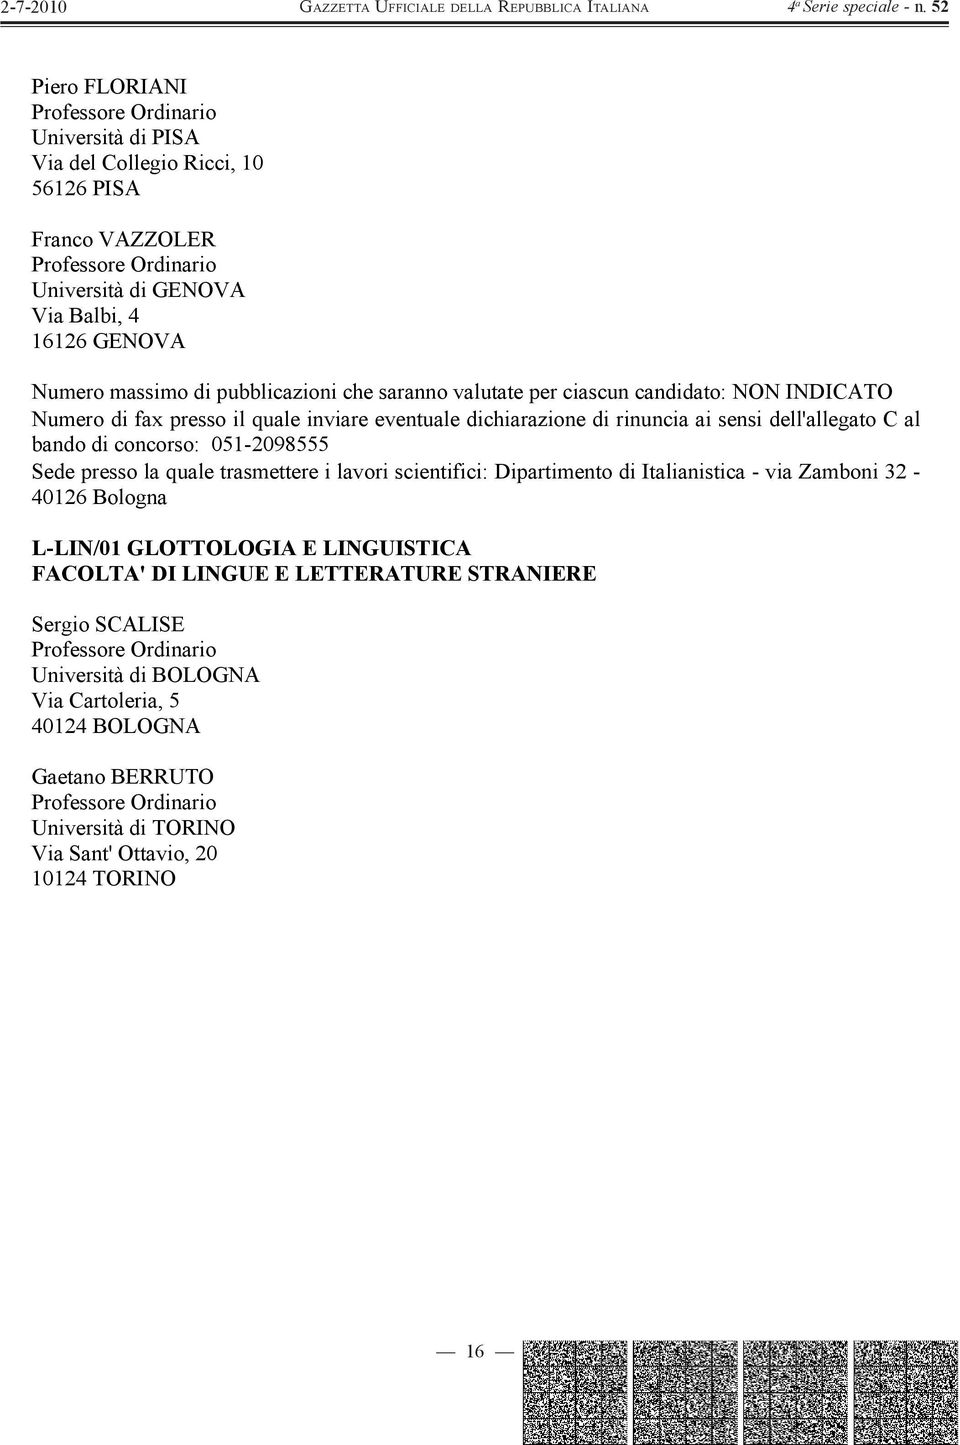 trasmettere i lavori scientifici: Dipartimento di Italianistica - via Zamboni 32-40126 Bologna L-LIN/01 GLOTTOLOGIA E LINGUISTICA FACOLTA' DI